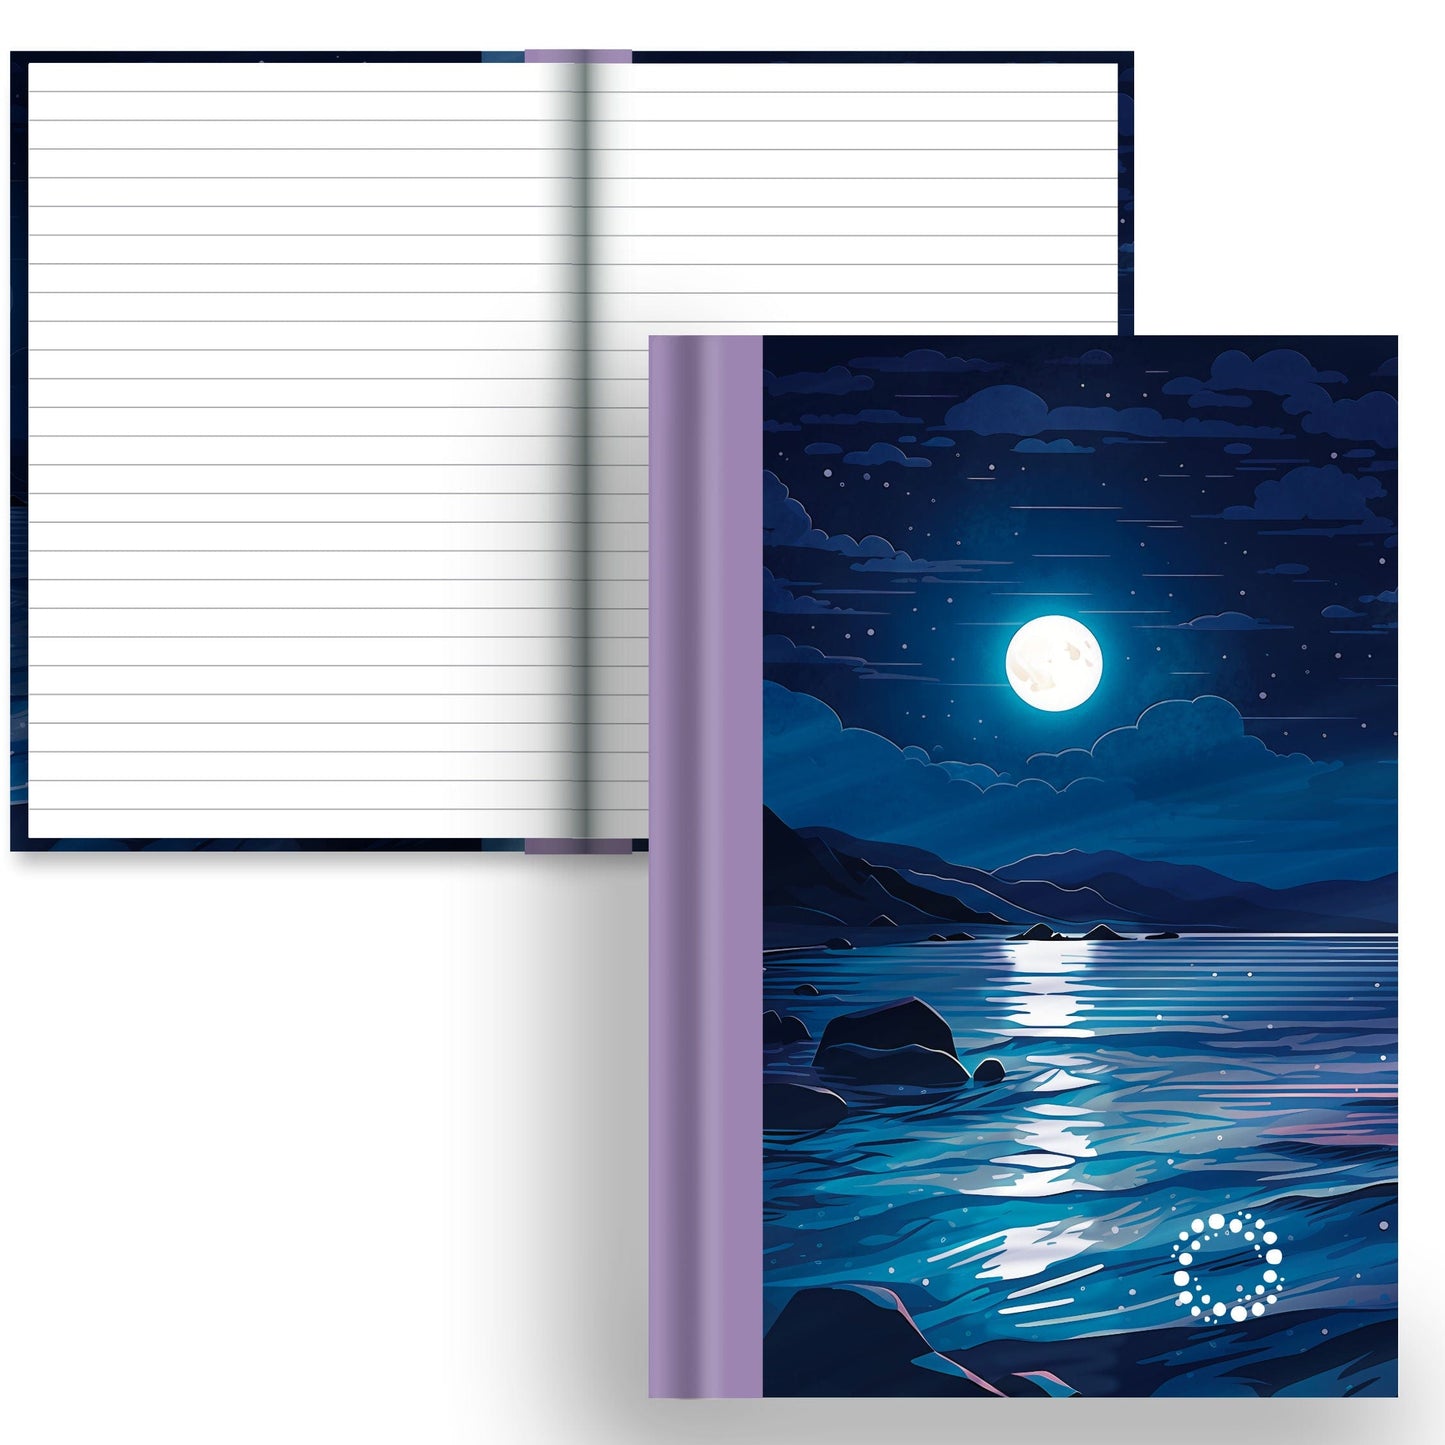 DayDot Journals A5 Notebook Lined Paper Serenity - A5 Hardback Notebook